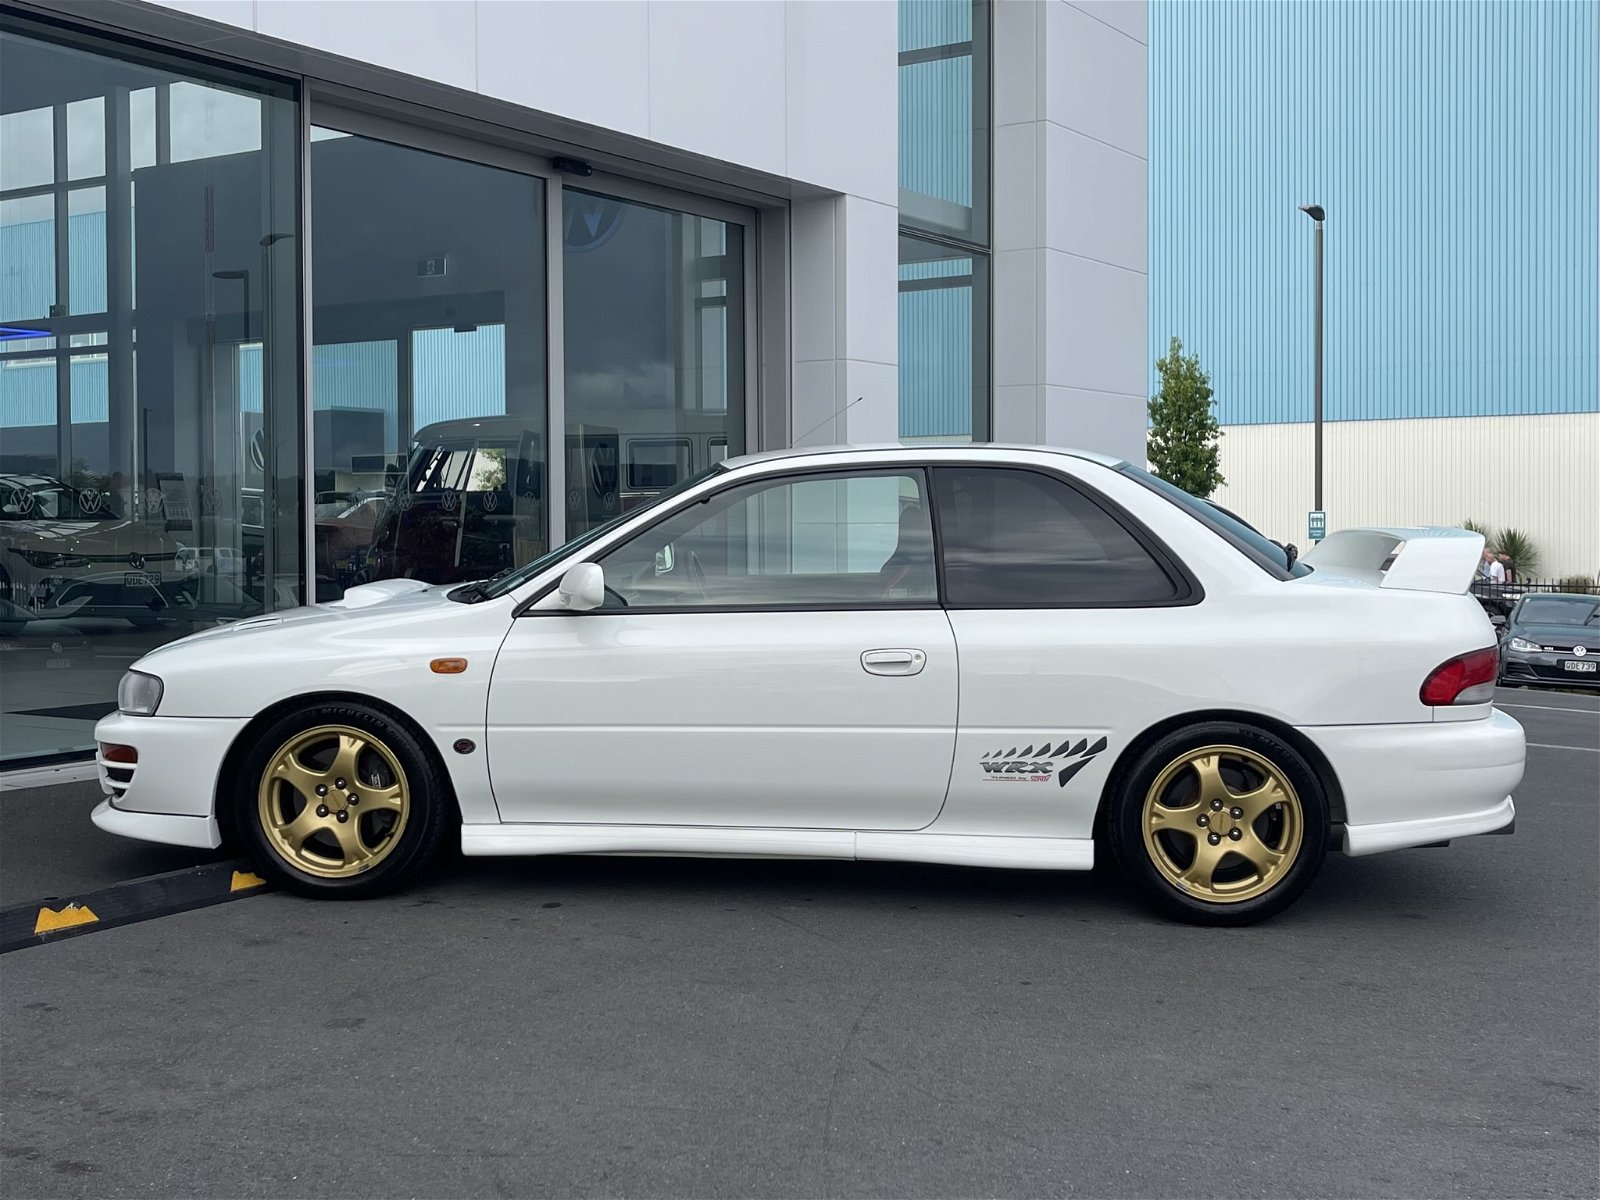 1997 Subaru WRX STI TYPE R COUPE